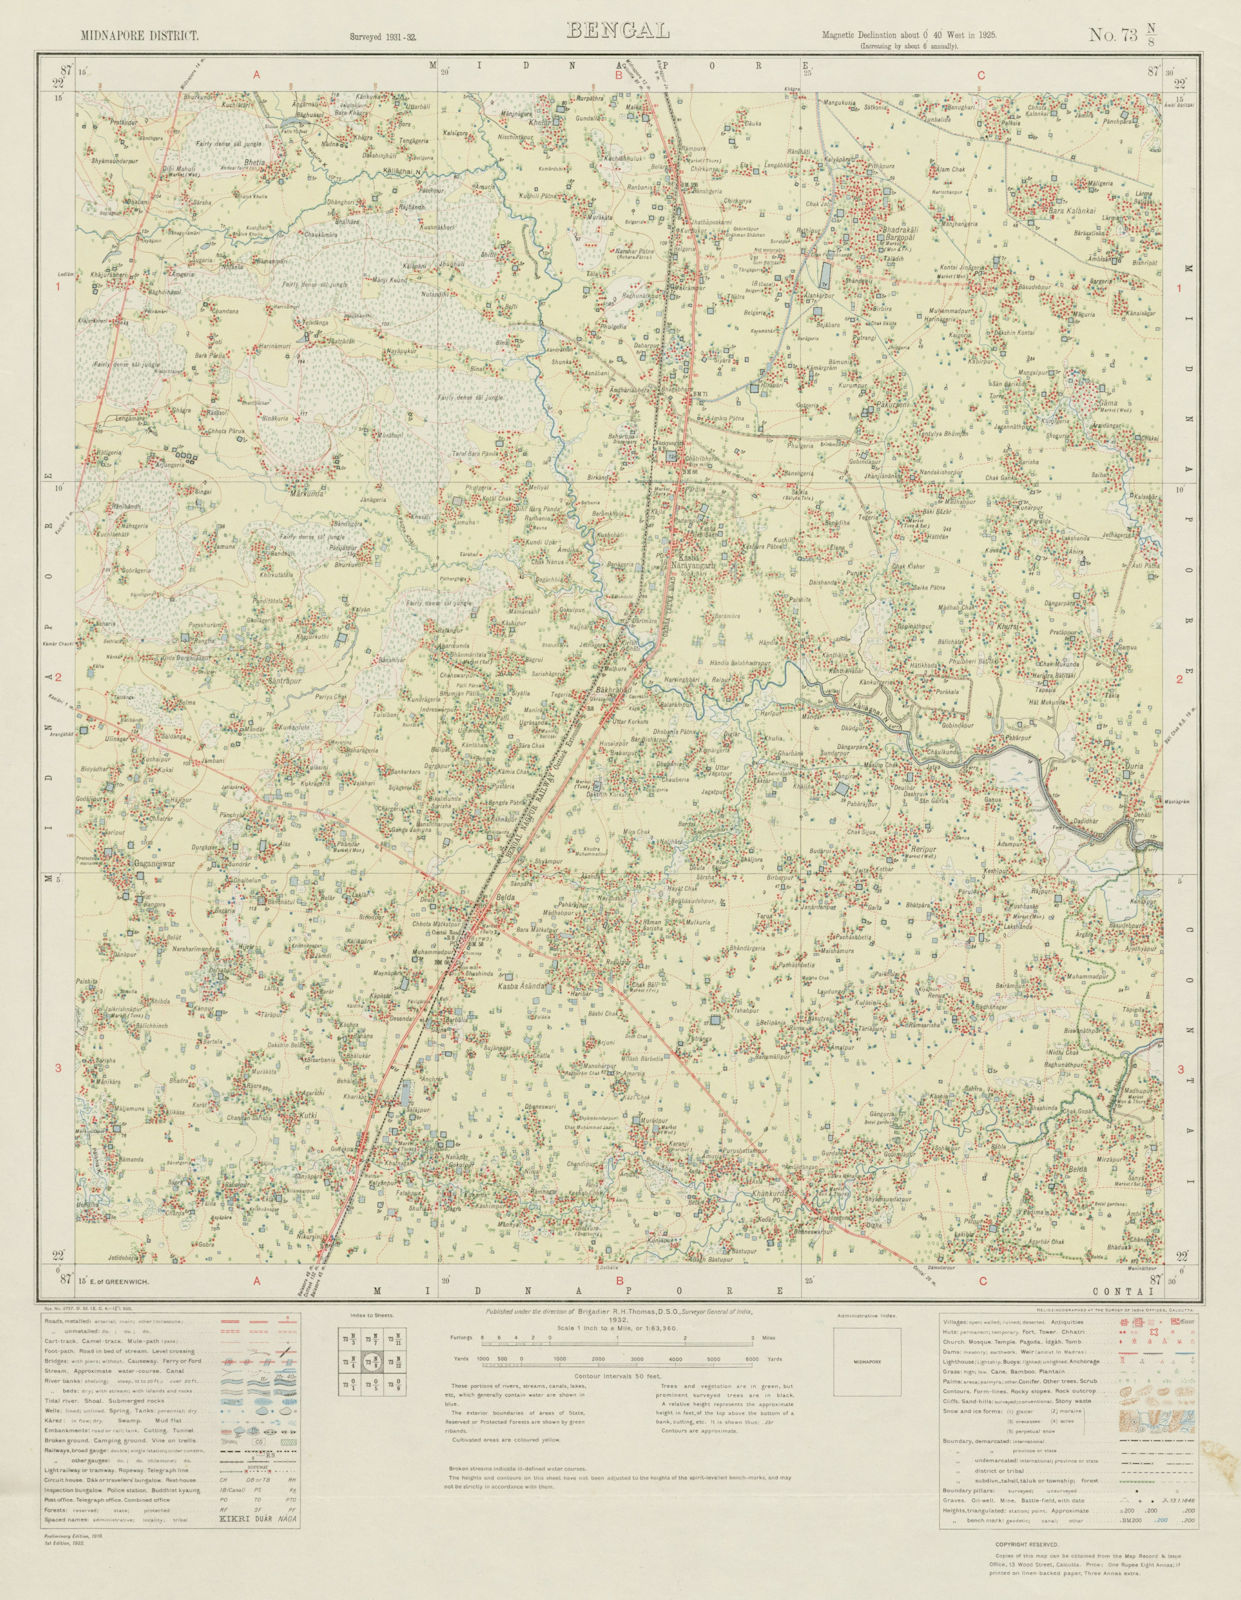 SURVEY OF INDIA 73 N/8 West Bengal Belda Kasba Narayangarh Nikursini 1931 map